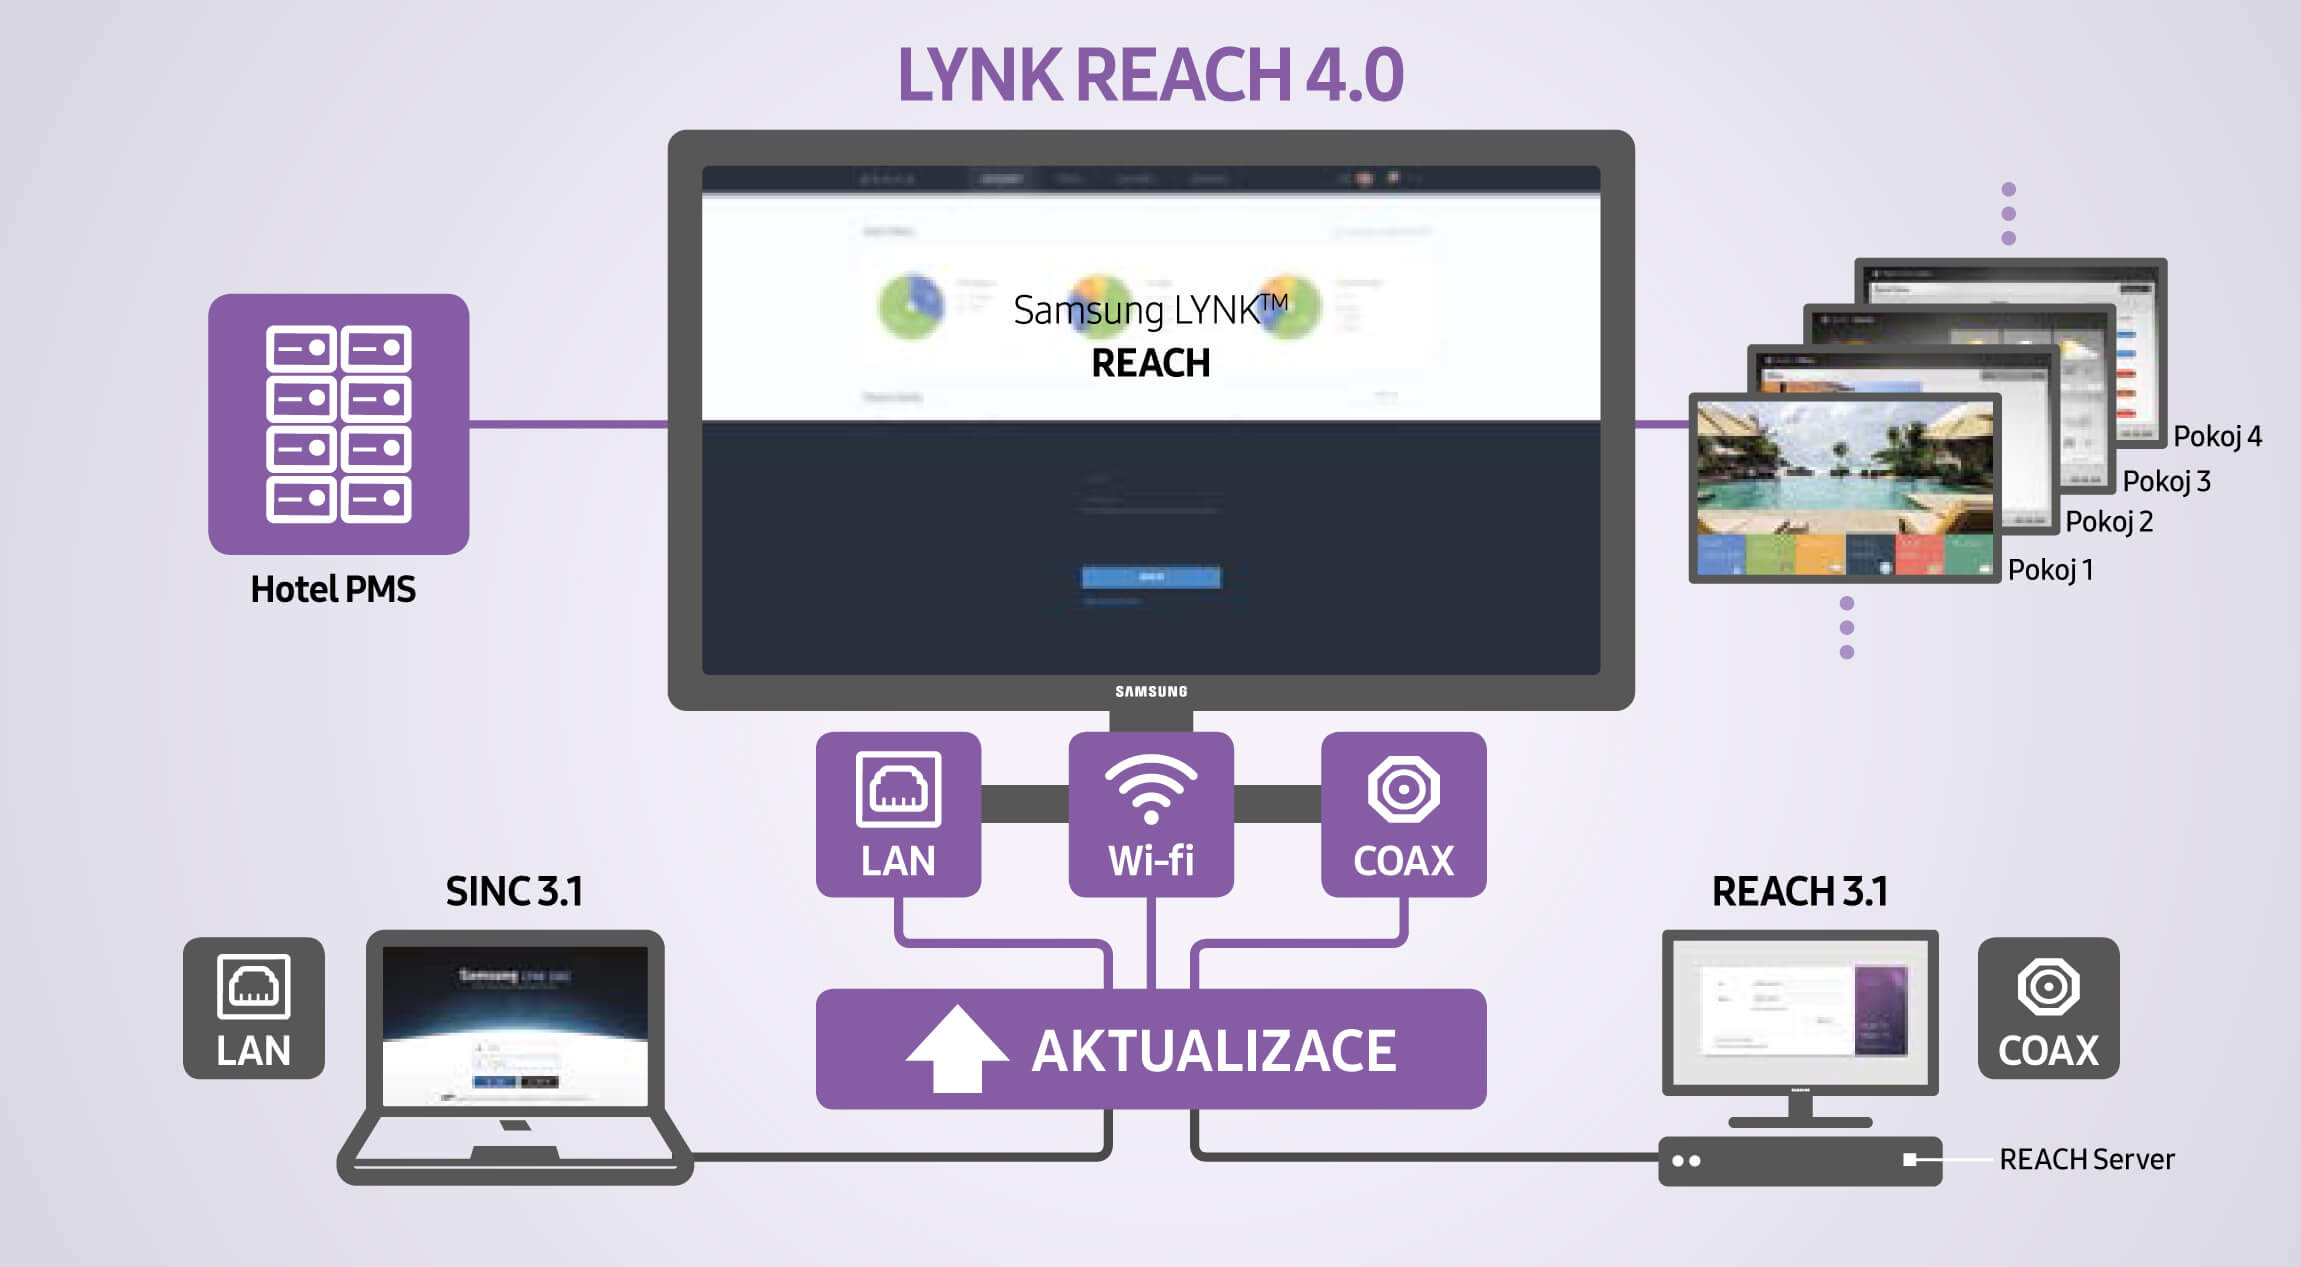 Samsung Lynk Reach 4.0